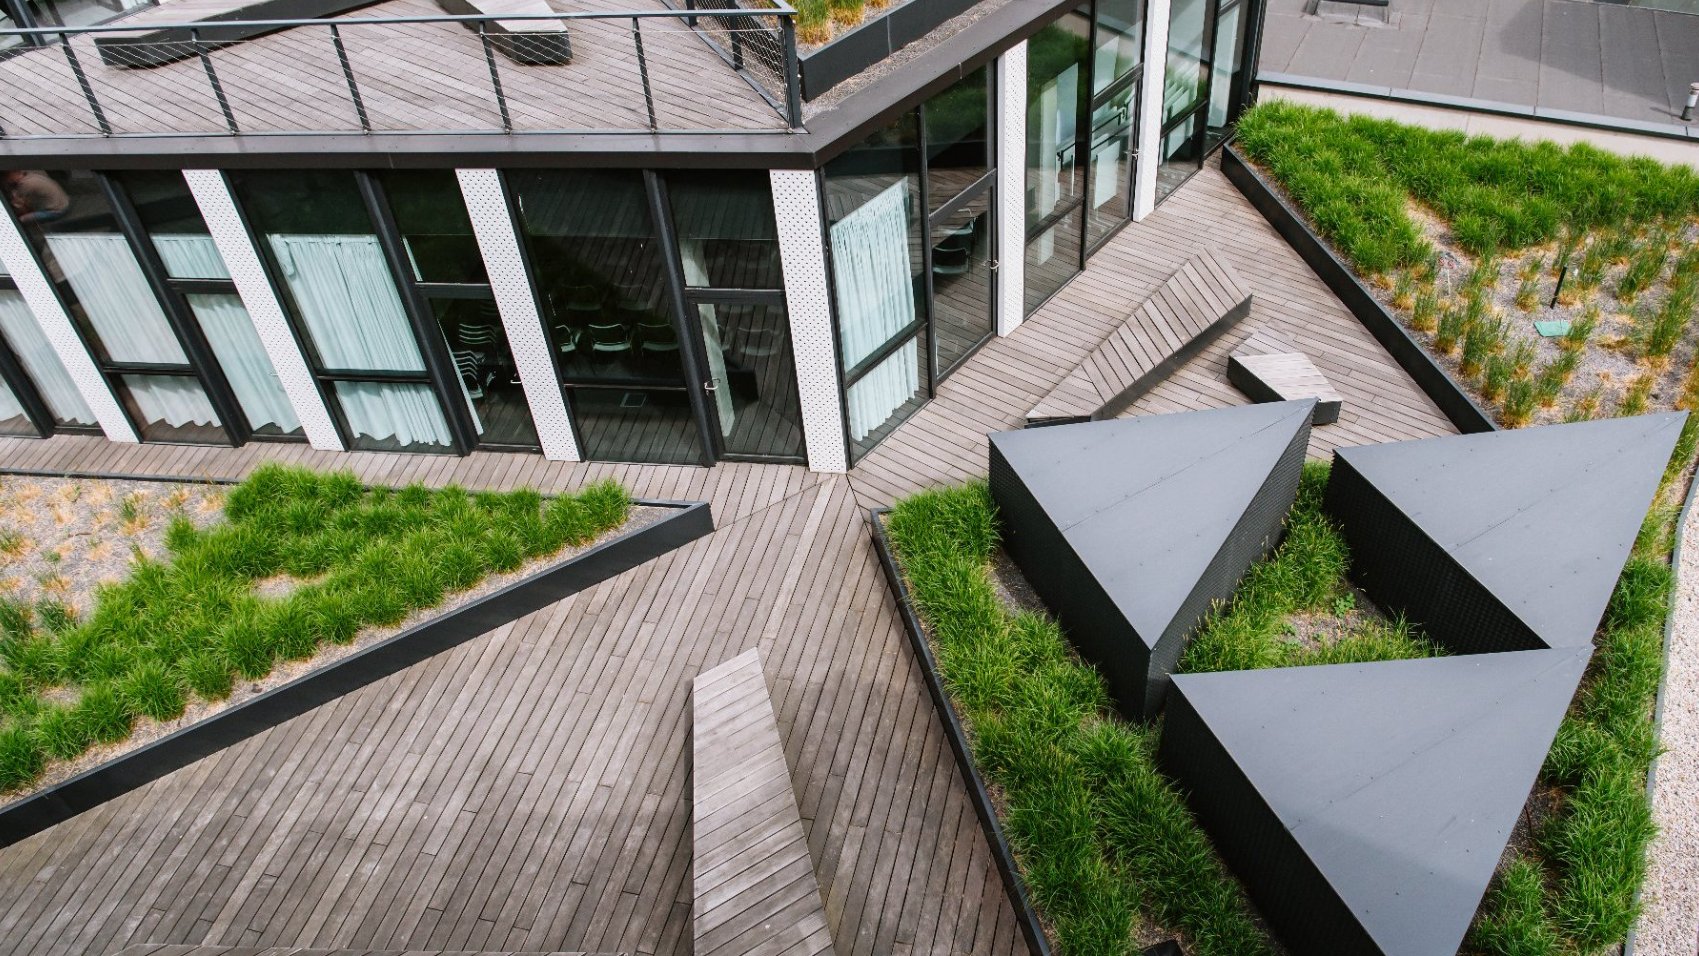 Na zdjeciu zielony dach budynku Za Bramką, widać trawę i ławki